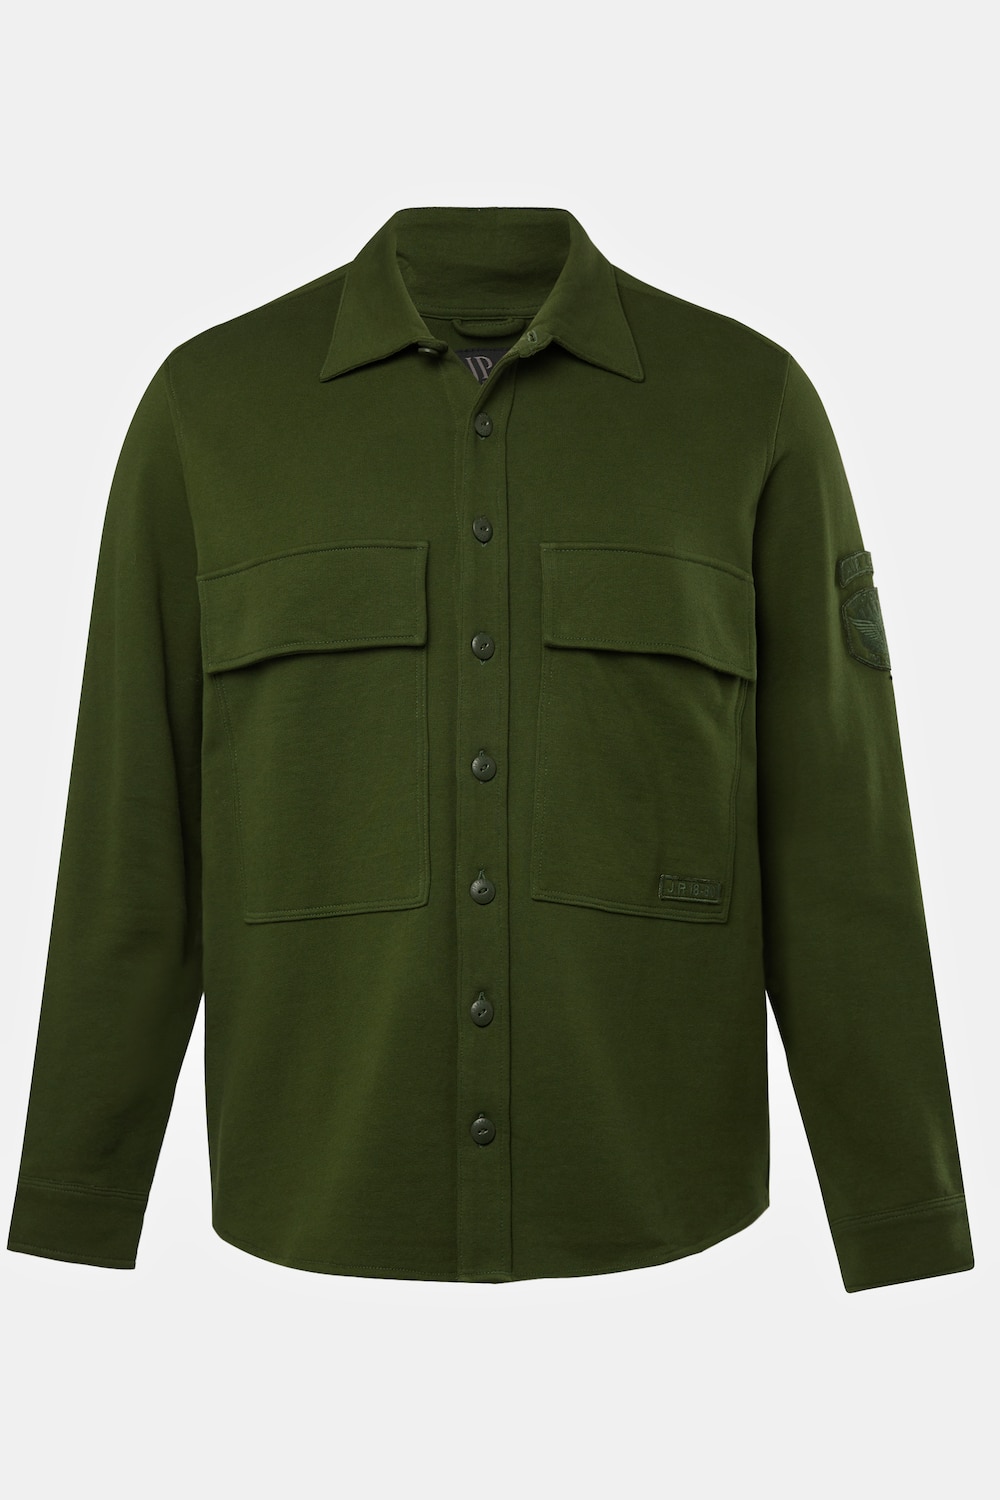 Grote Maten Overhemd, Heren, groen, Maat: 3XL, Katoen, JP1880